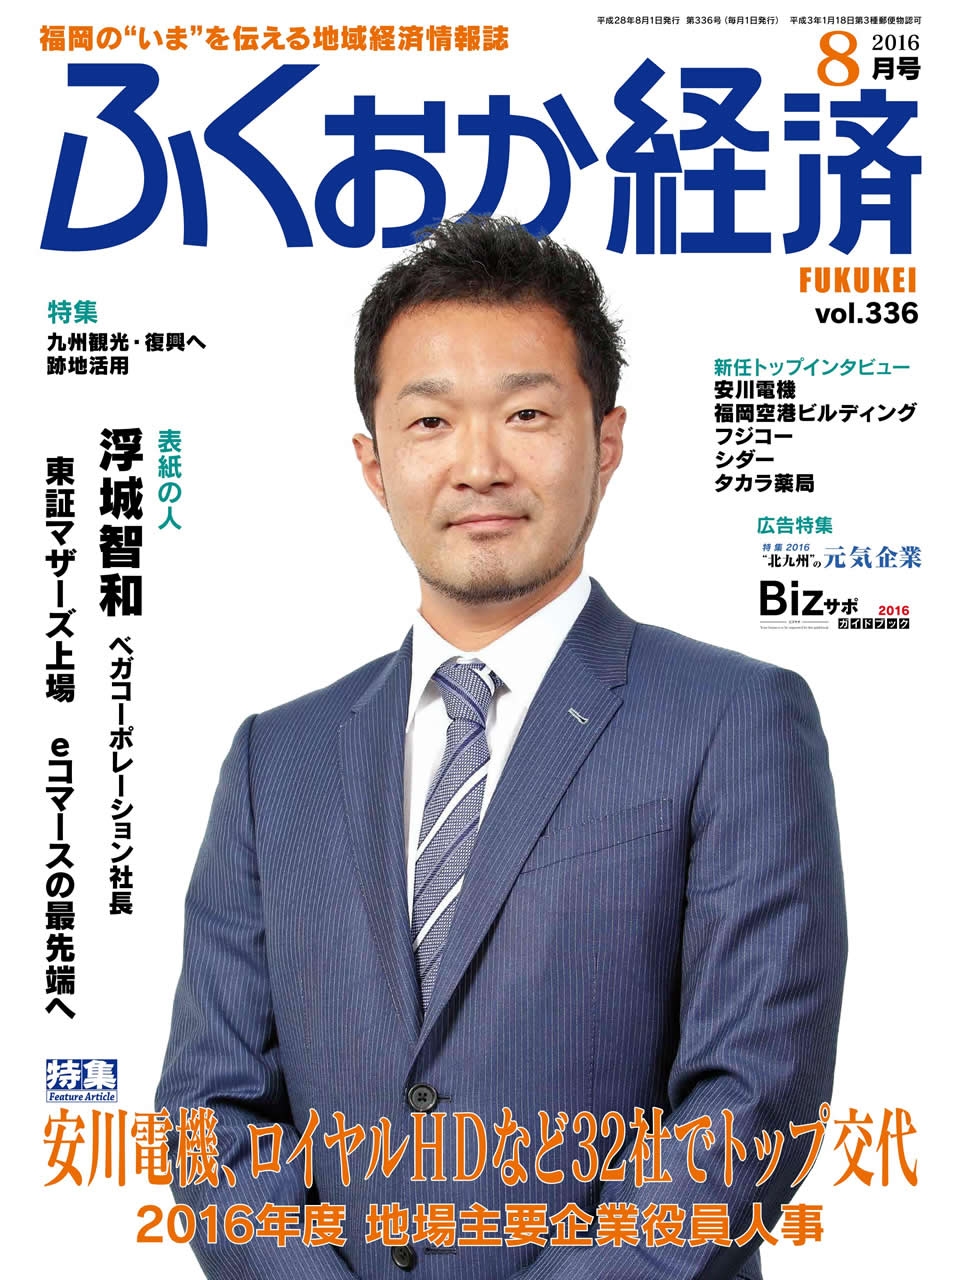 福岡経済2016年8月号に掲載されました。